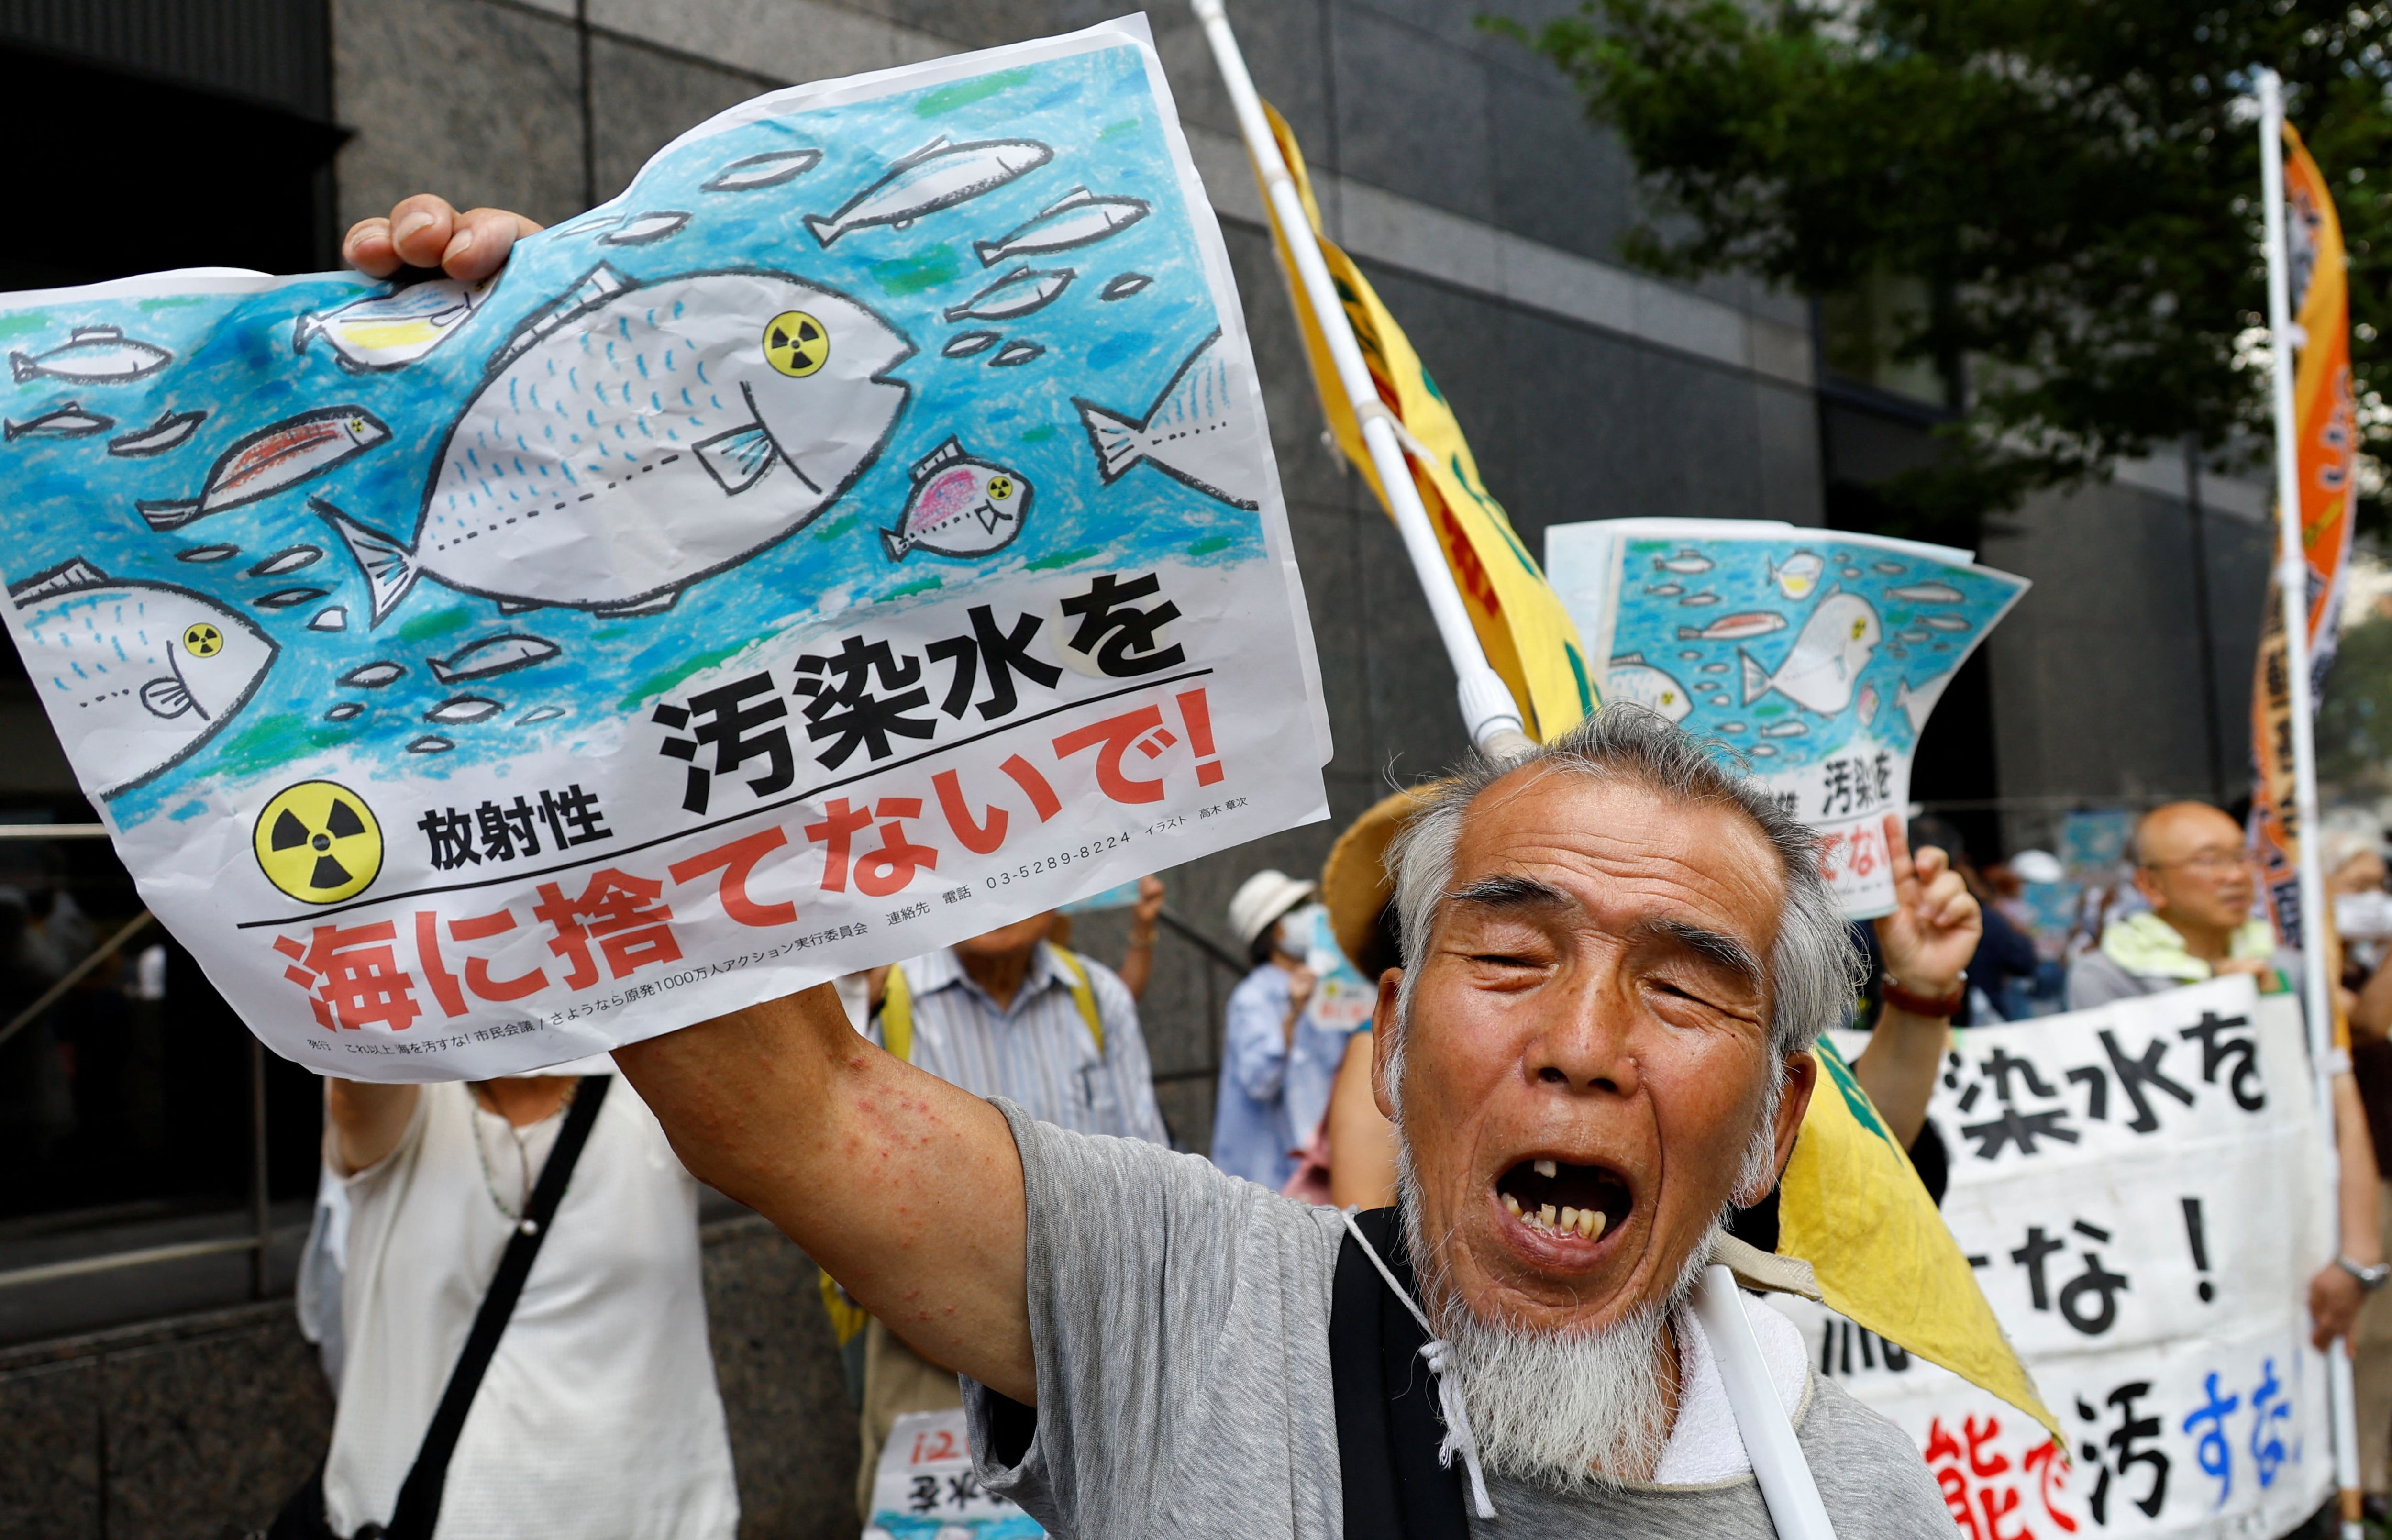 Un manifestante sostiene una pancarta en la que se lee "No al mar con agua contaminada con radiación" durante una concentración contra el plan de Japón de verter al océano agua radiactiva tratada procedente de la central nuclear de Fukushima Daiichi, destruida por el tsunami, frente a la sede de la Compañía Eléctrica de Tokio (TEPCO), operadora de la central nuclear, en Tokio, Japón. 24 de agosto de 2023. REUTERS/Kim Kyung-hoon